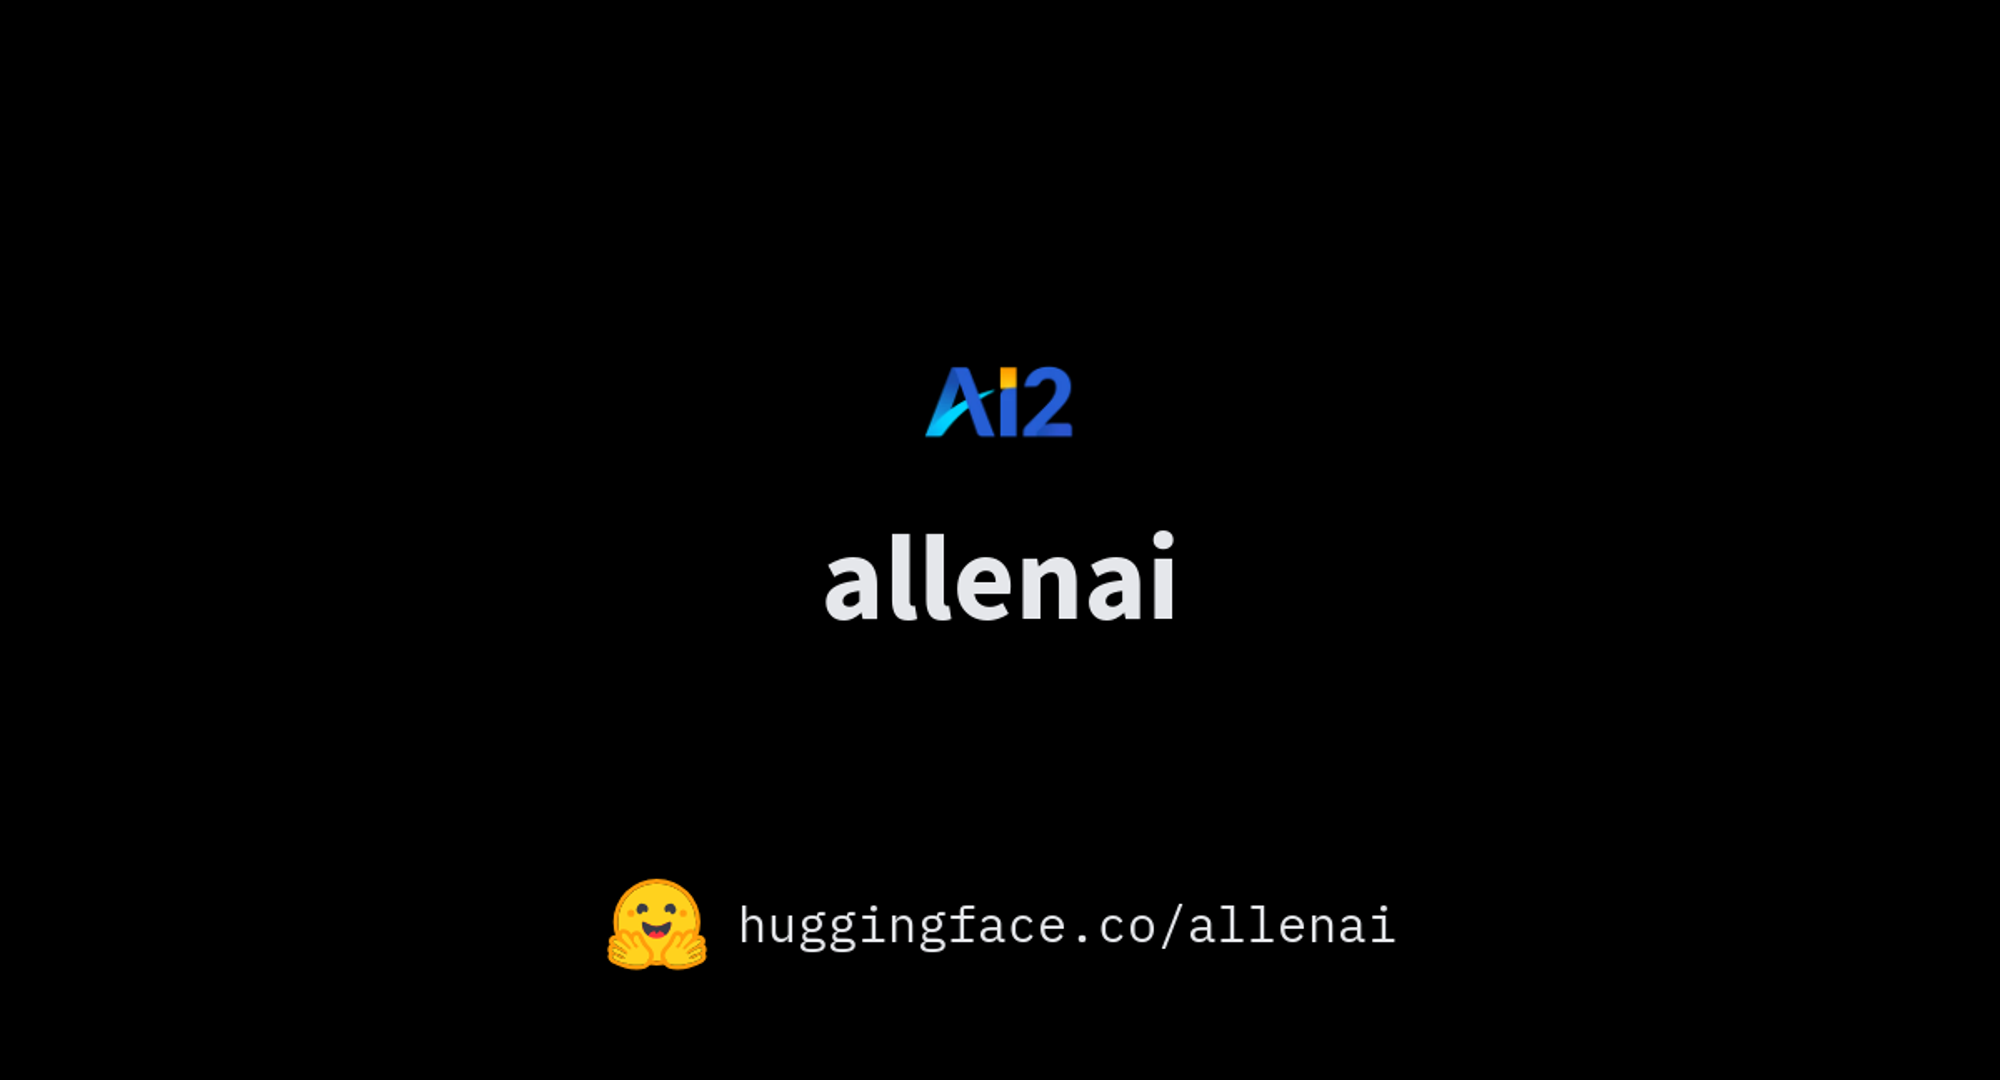 allenai (Allen Institute for AI)